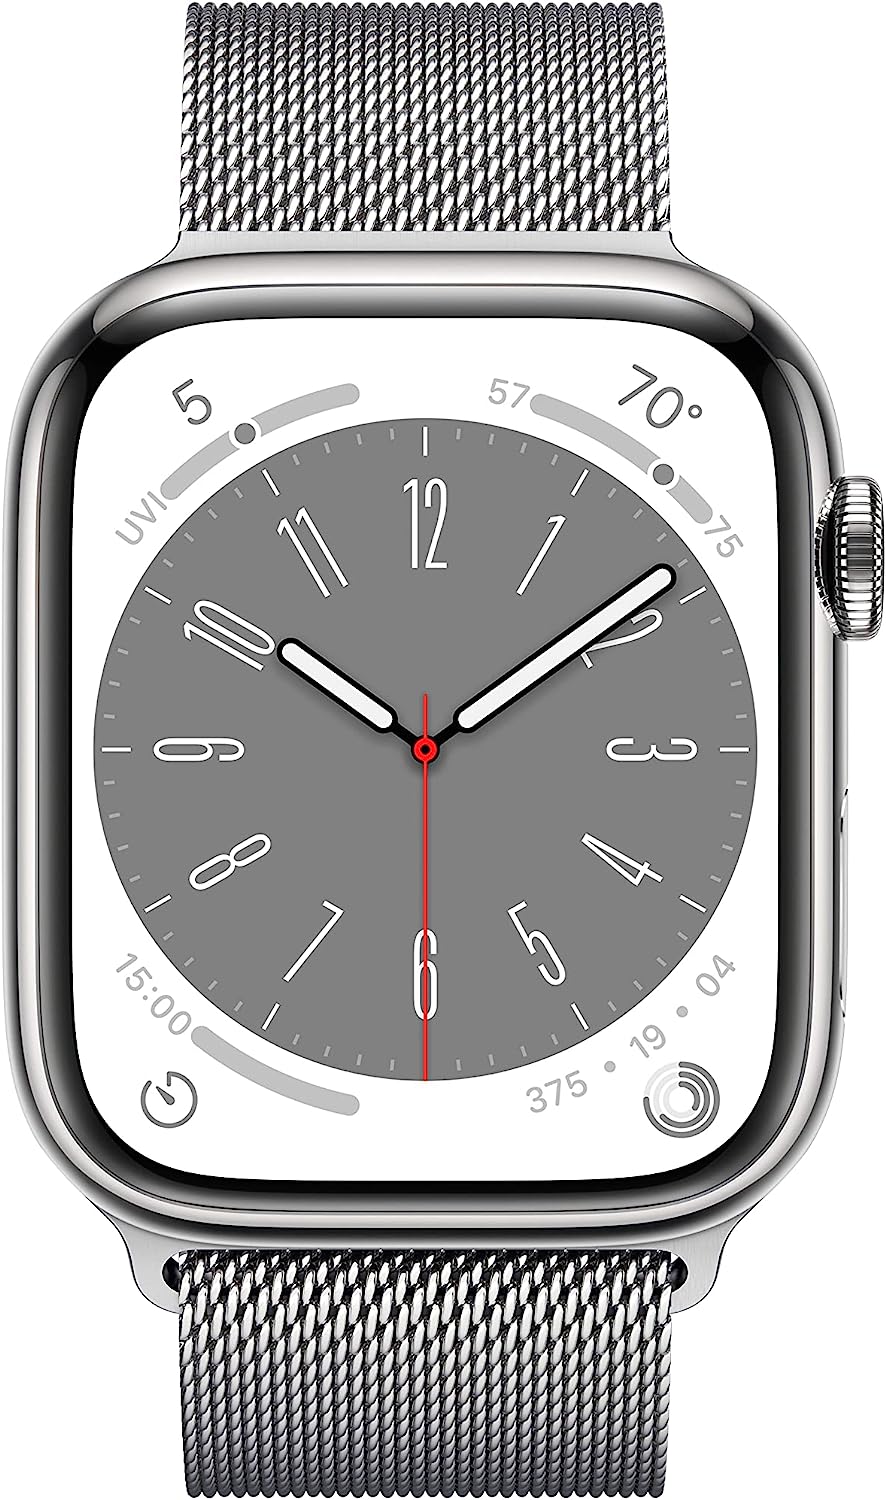 Apple Watch Series 6 (GPS + LTE) 40MM Silver Stainless Steel Case Milanese Loop (Refurbished)